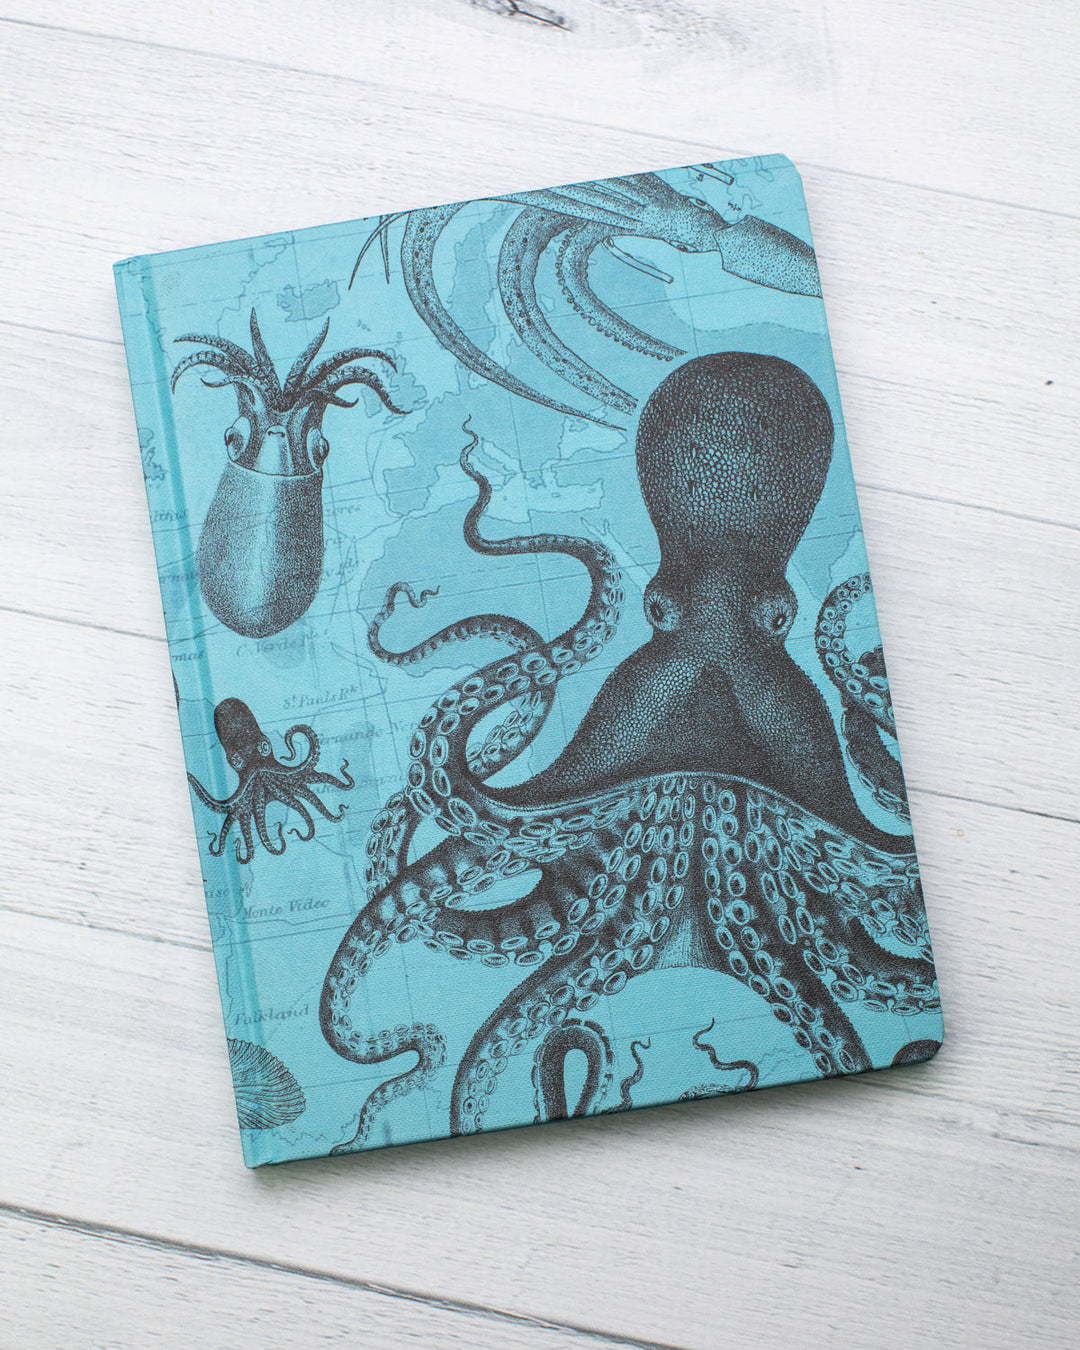 Octopus + Squid Journal